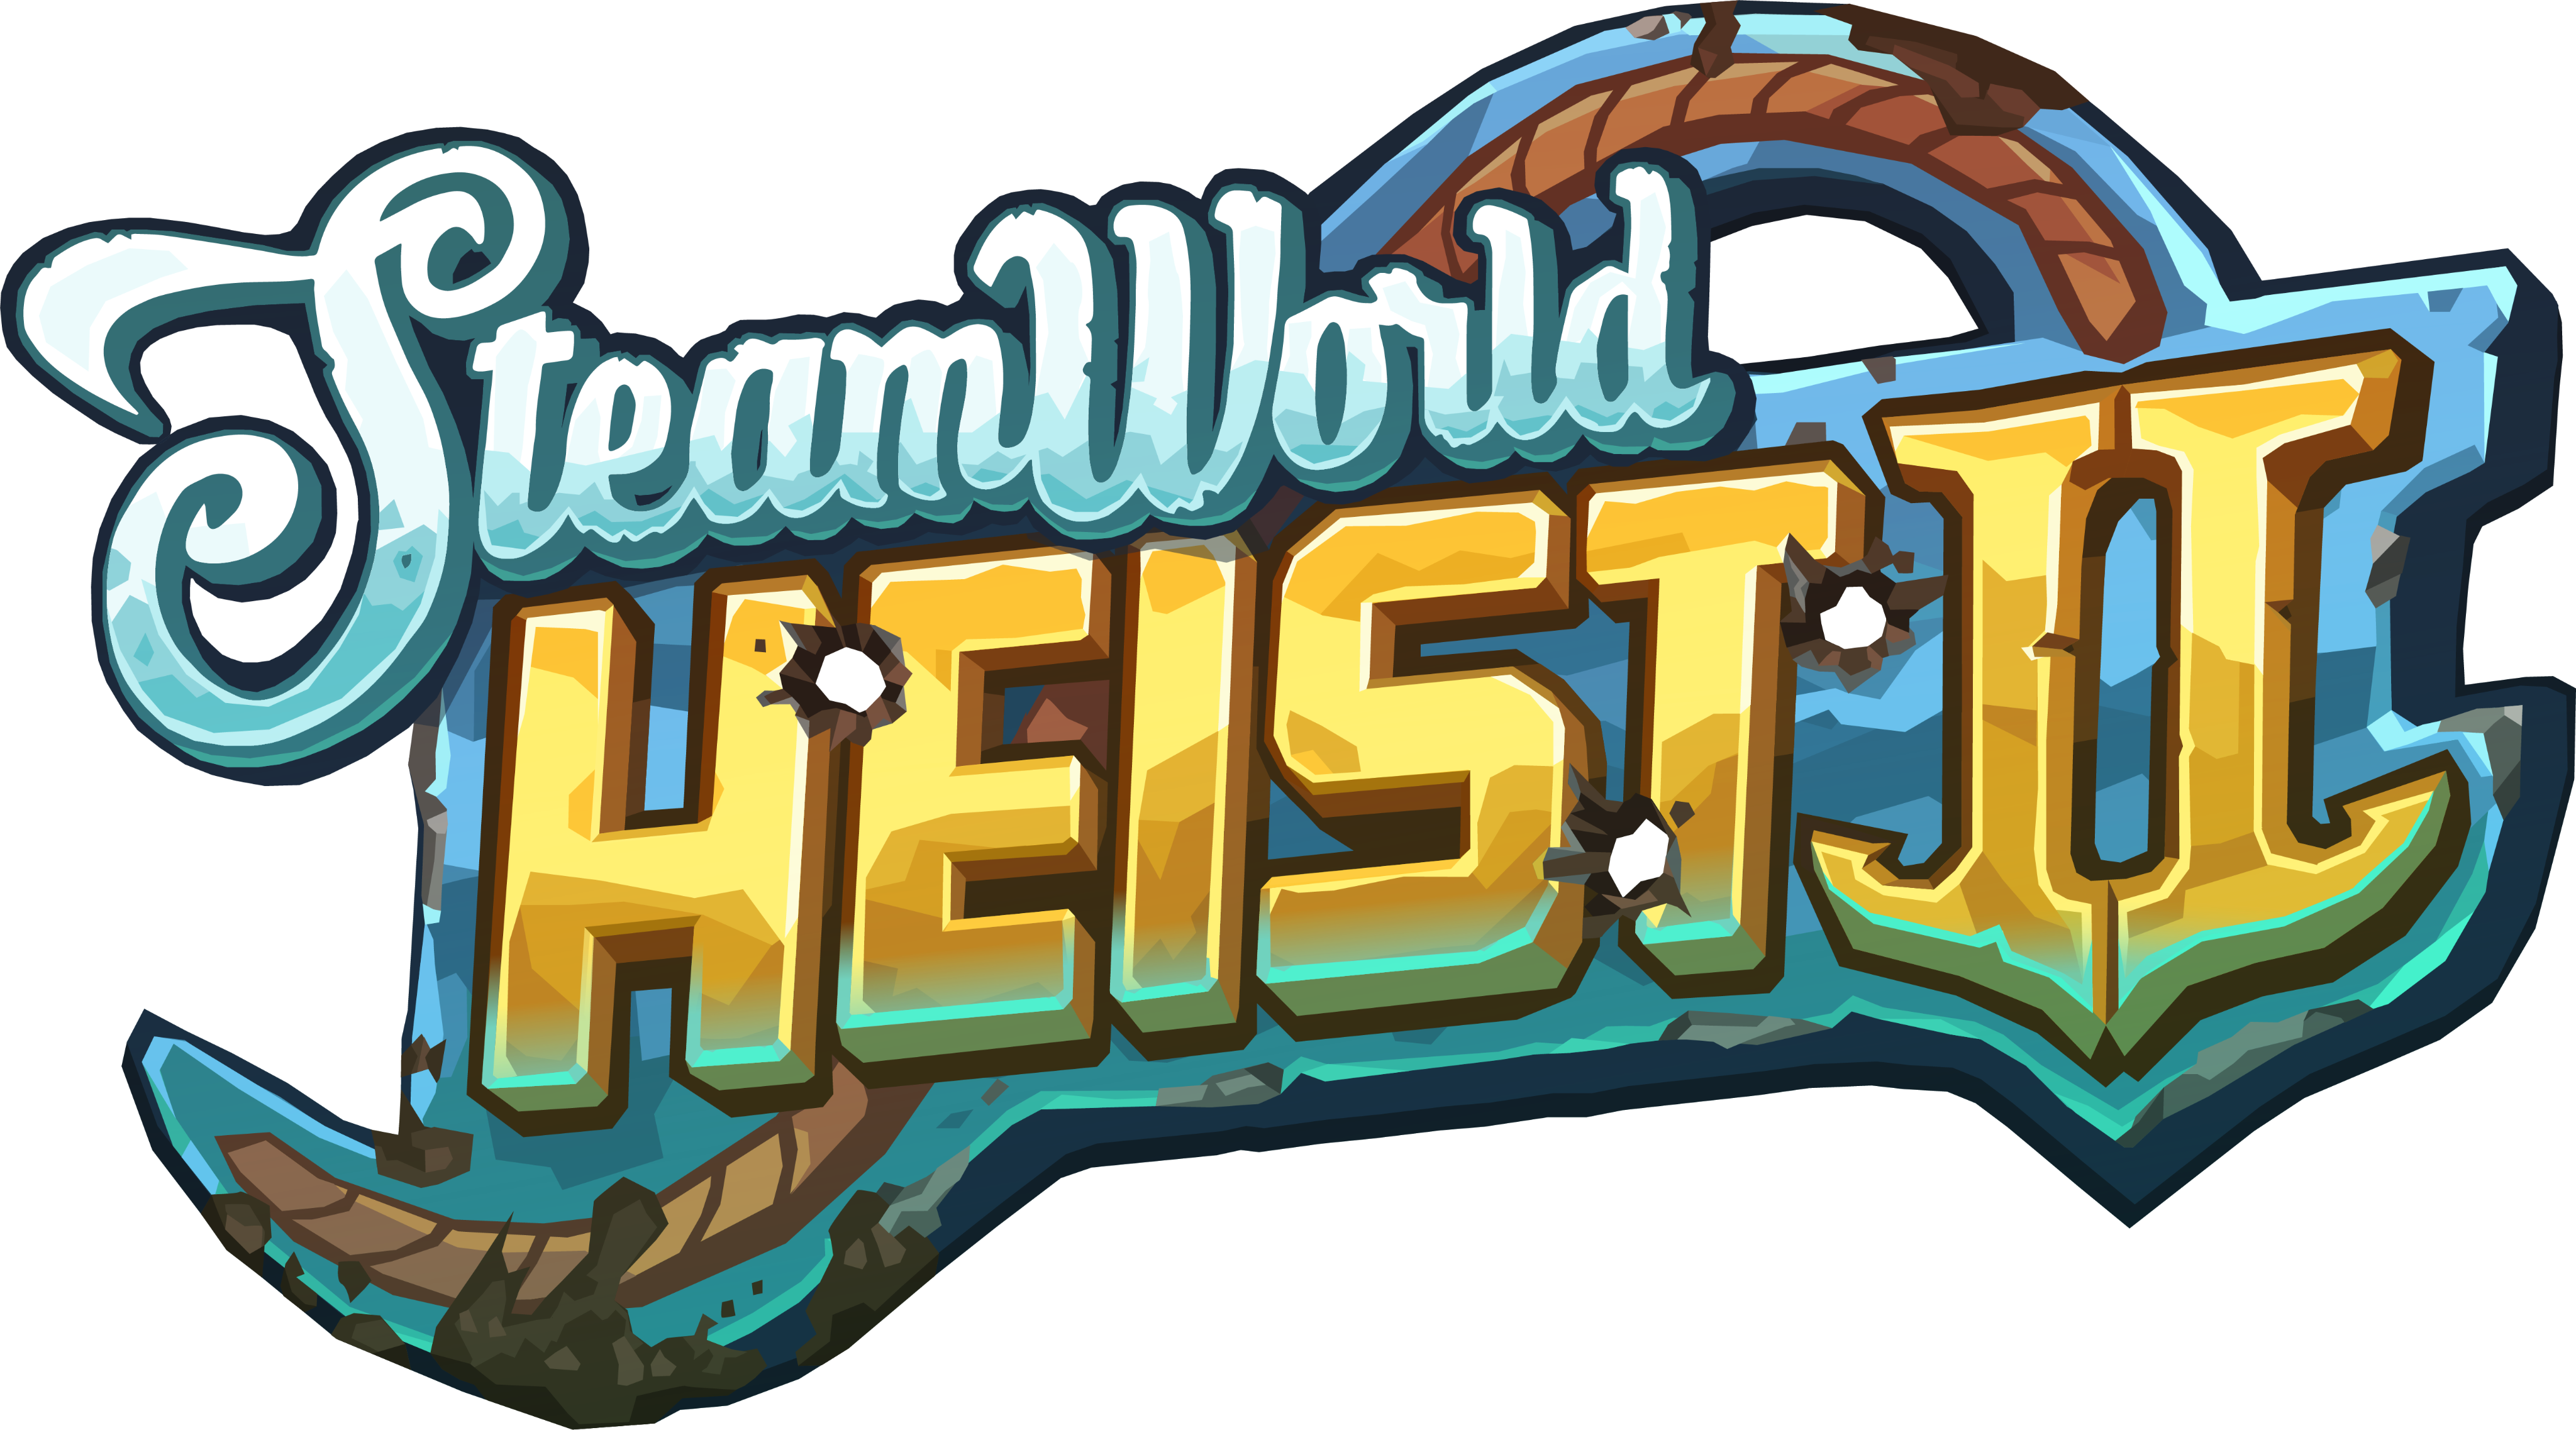 SteamWorld Build - SteamWorld Heist 2